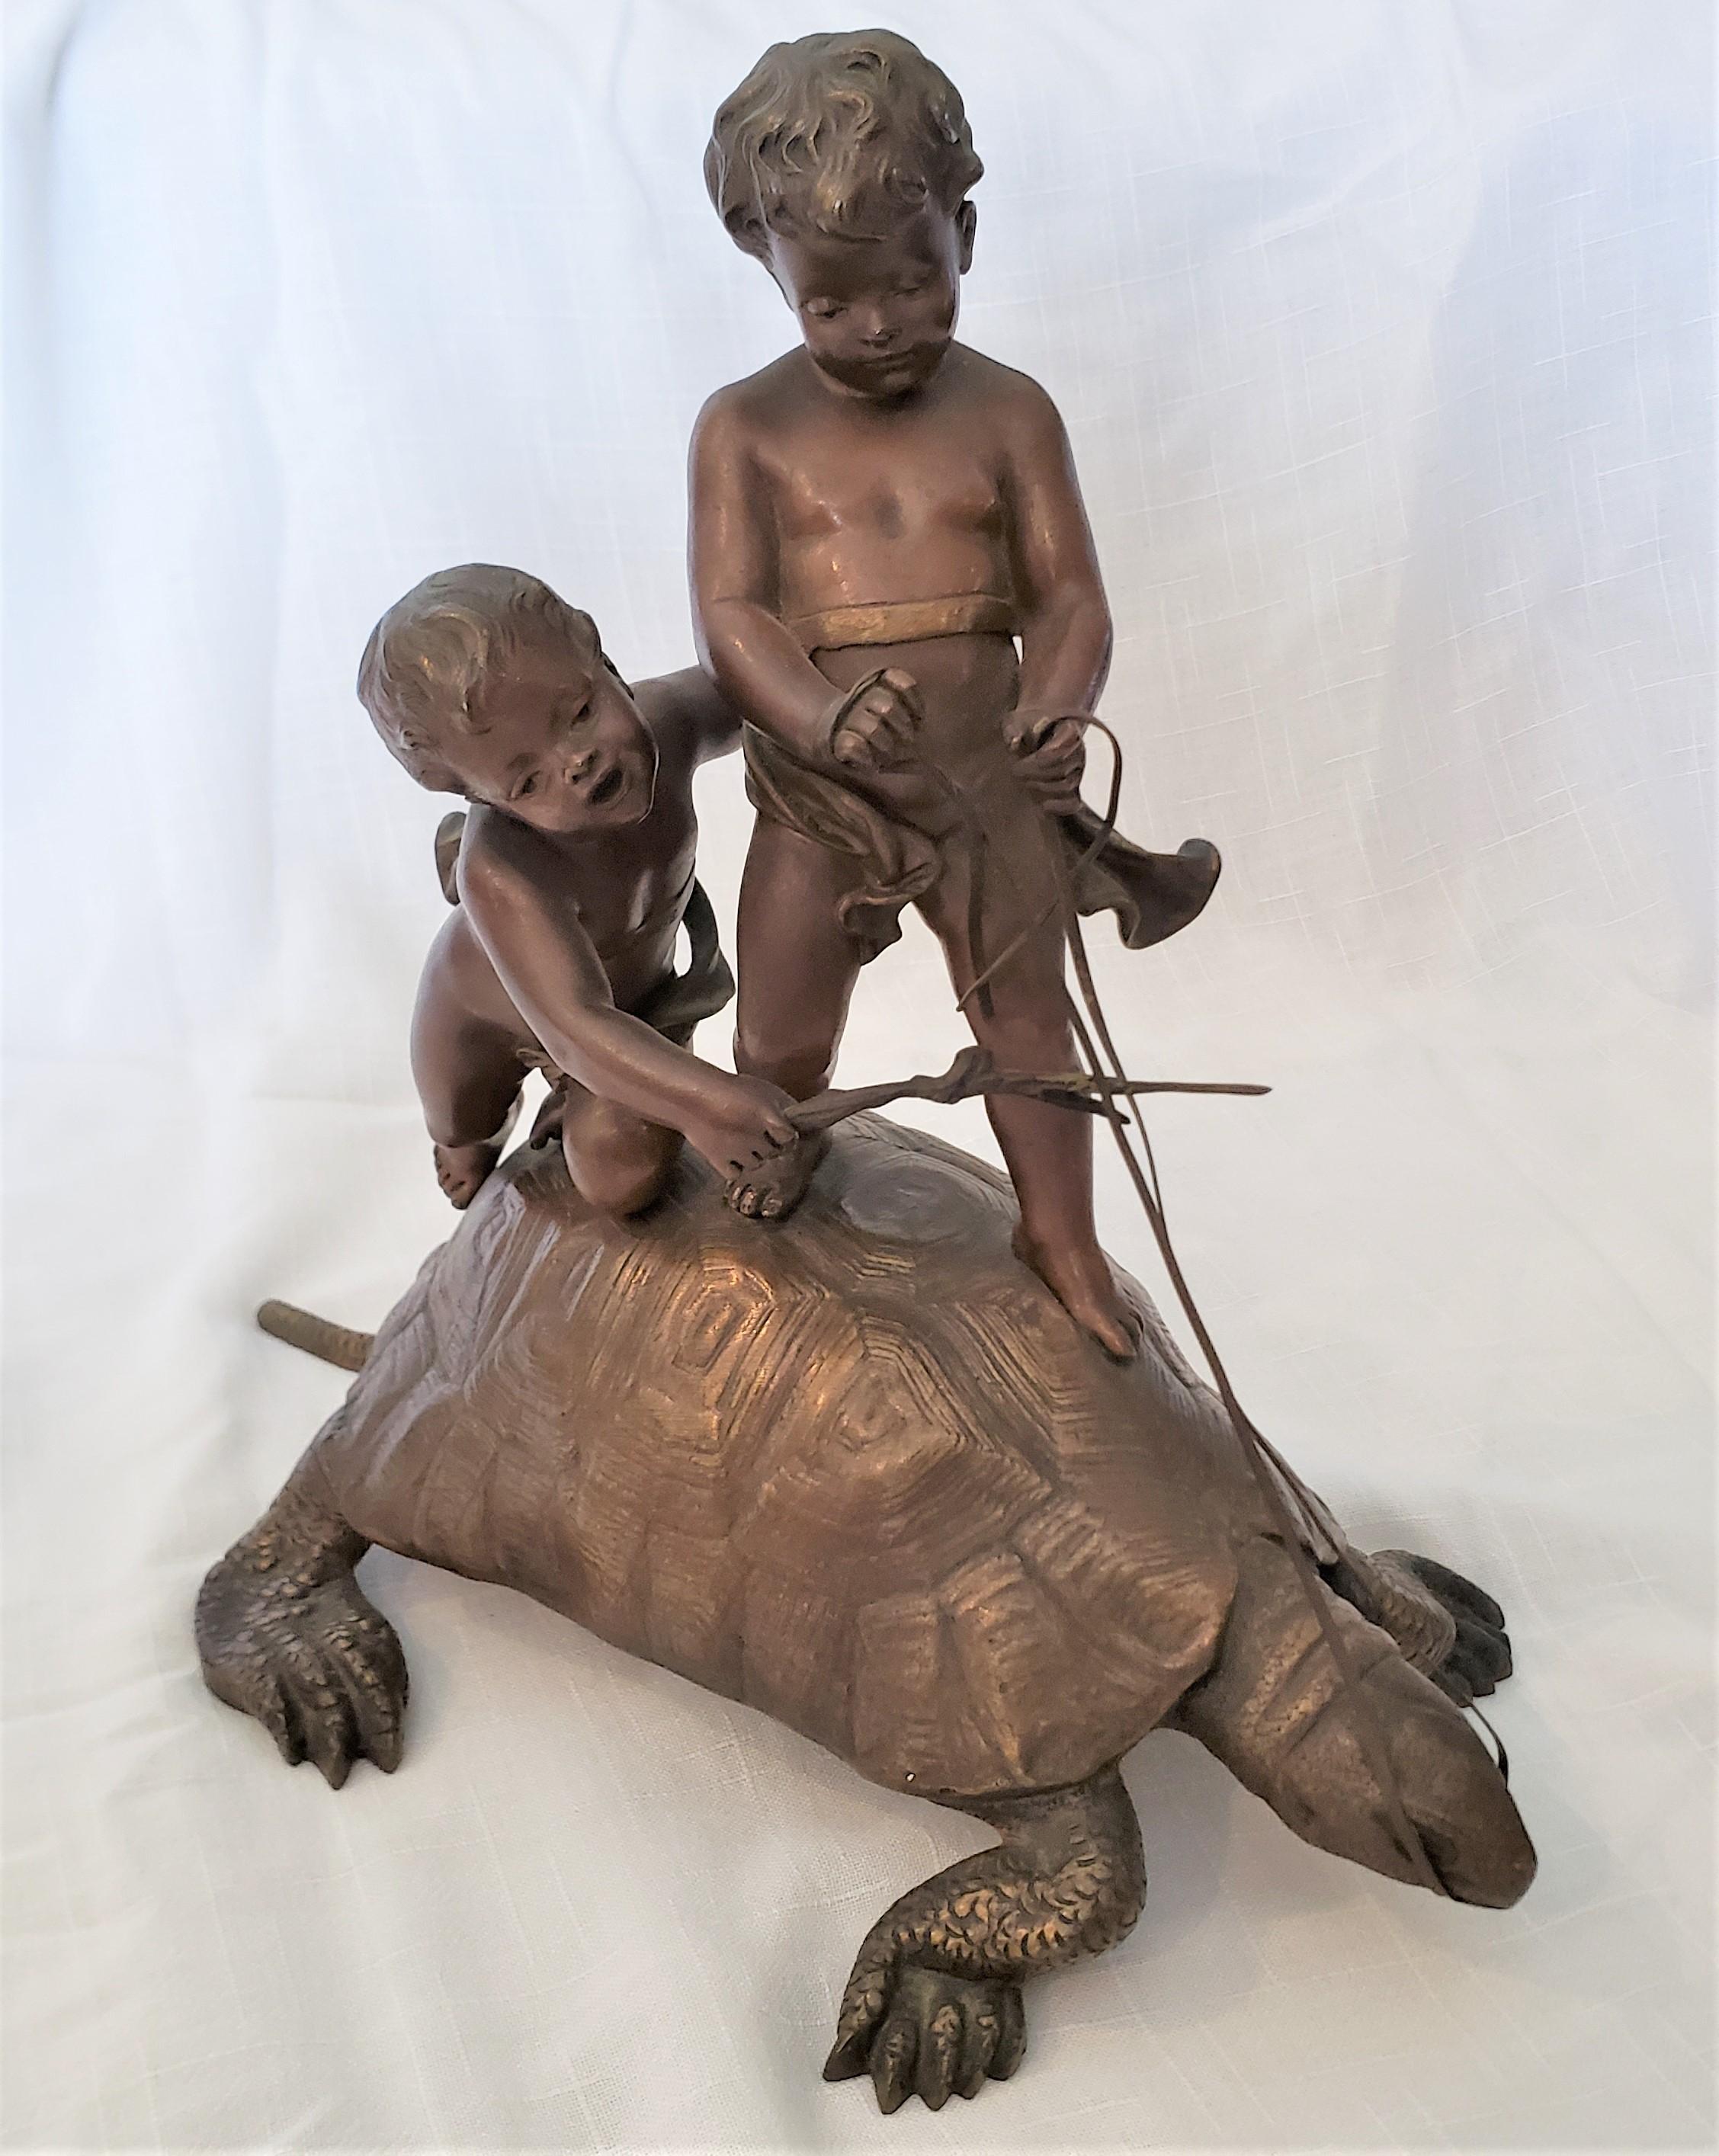 Diese skurrile antike Bronzeskulptur wurde von Eutrope Bouret aus Frankreich um 1890 im Empire-Stil geschaffen. Diese sehr gut ausgeführte Bronzeskulptur zeigt zwei Jungen, die auf dem Rücken einer Schildkröte reiten und die Zügel in der Hand